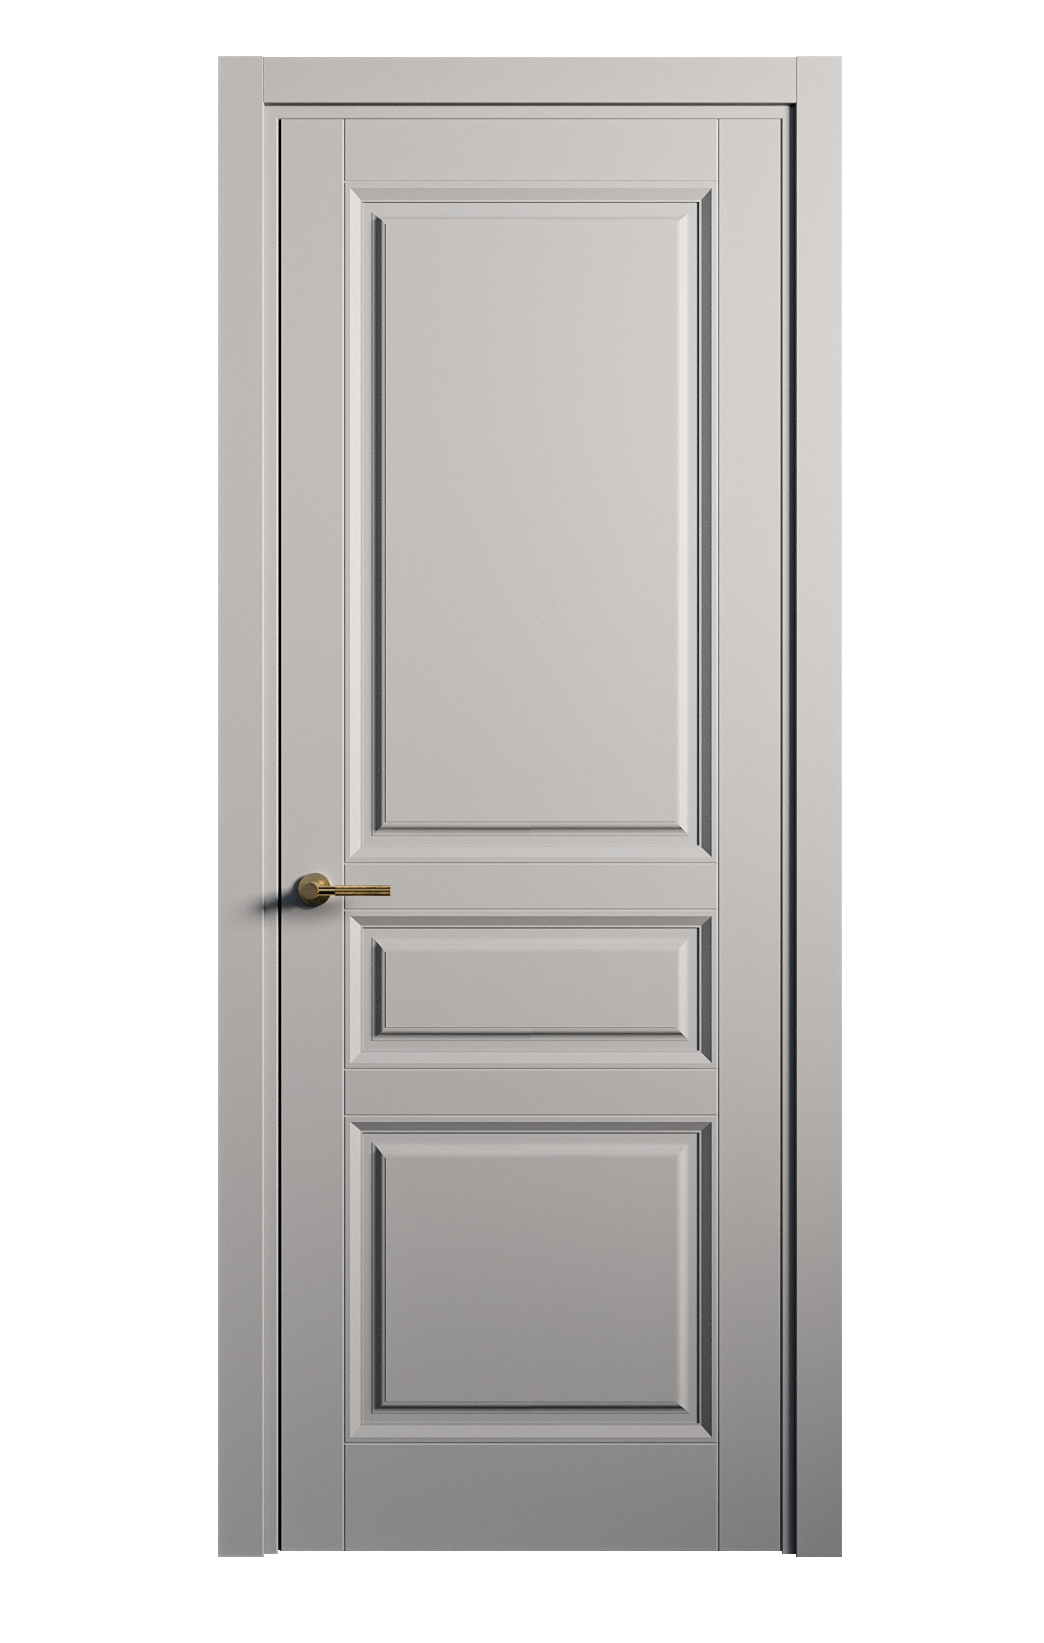 Межкомнатная дверь Venezia-2 глухая эмаль ral 7040 25704